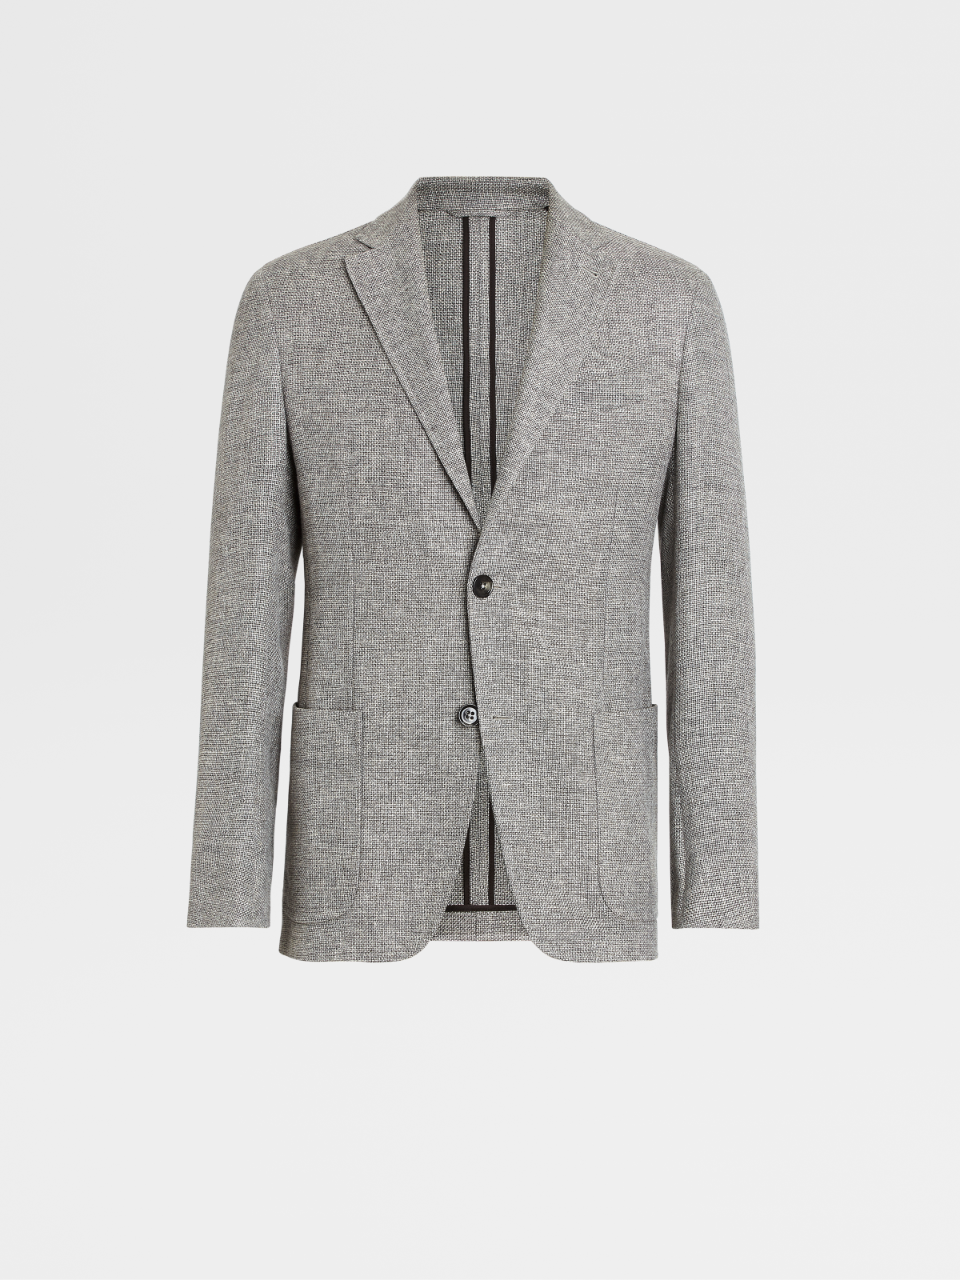 浅麻灰色羊毛及亚麻混纺衬衫式外套，修身版型